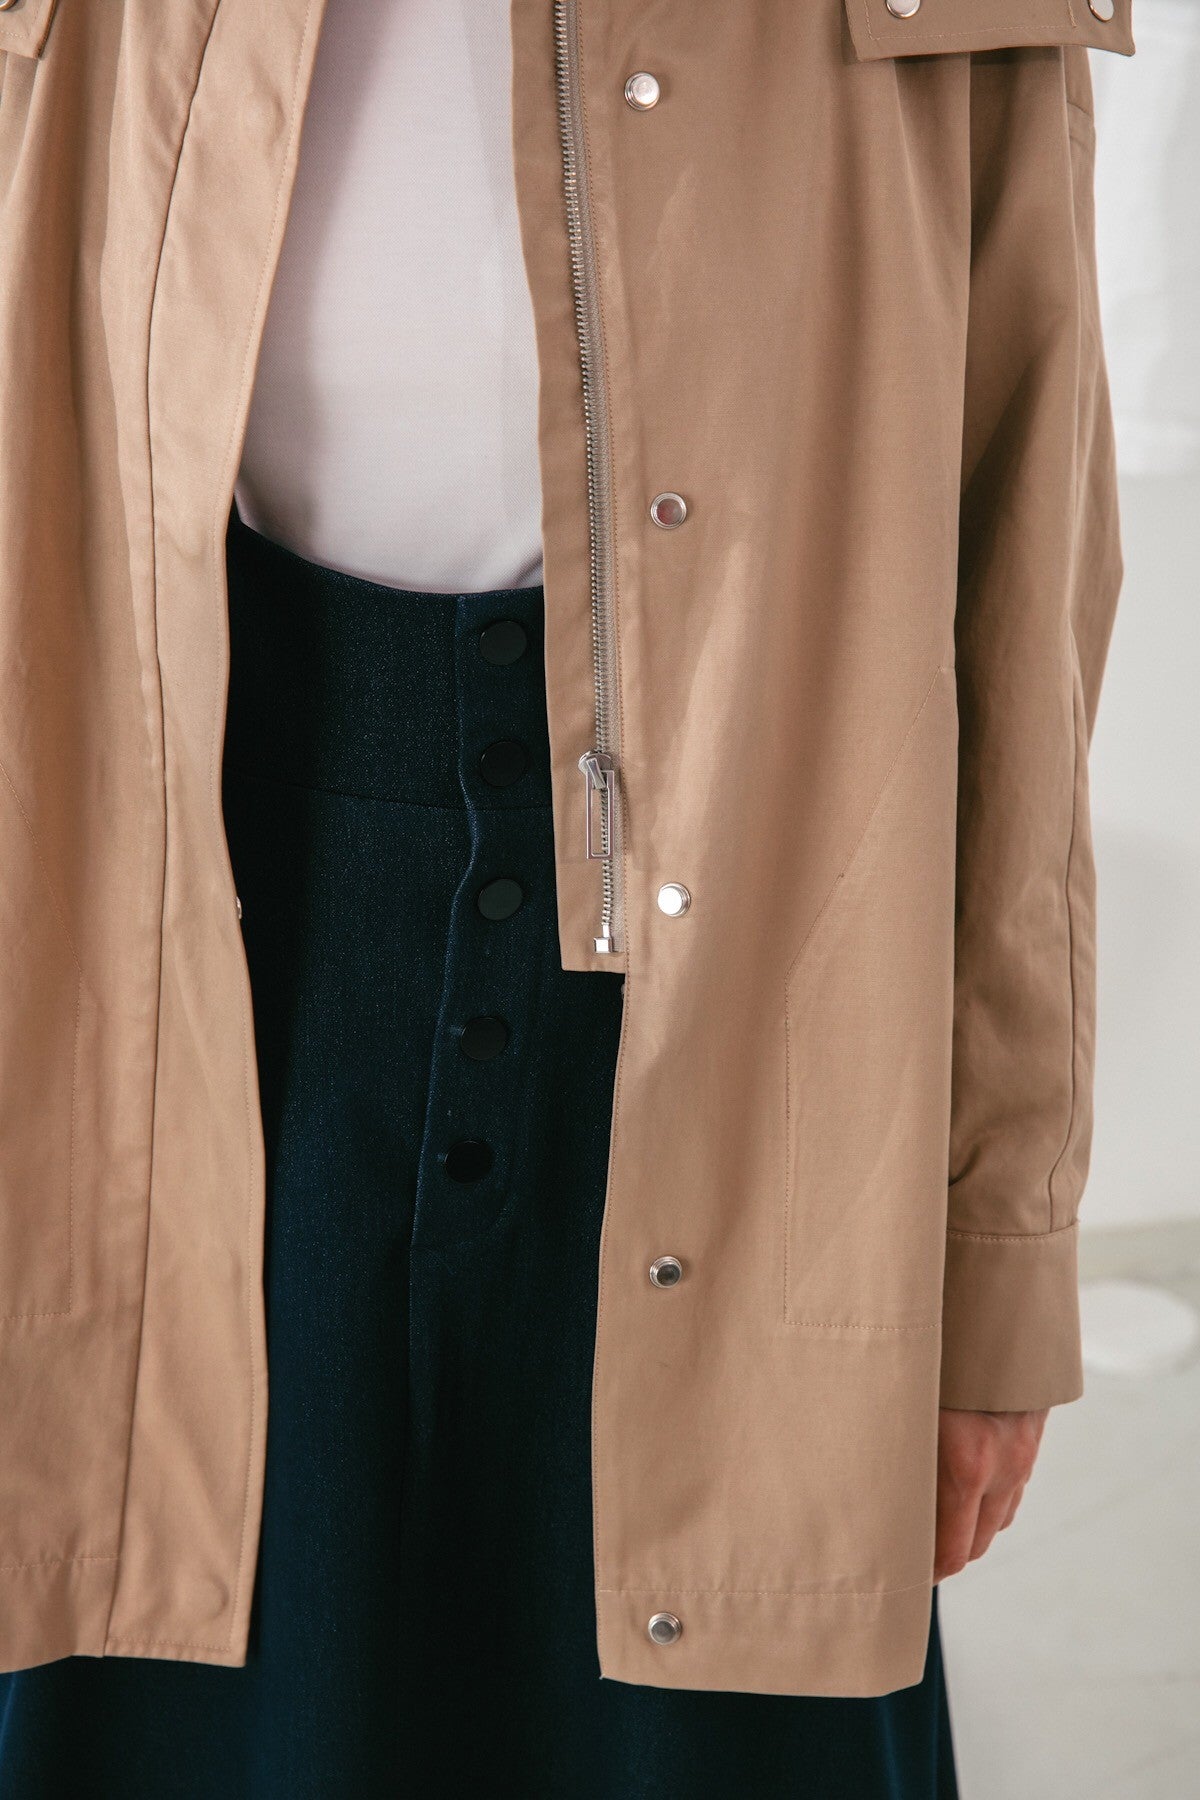 SKYE San Francisco SF shop ethical modern minimalist quality women clothing fashion Gabrielle Coat beige